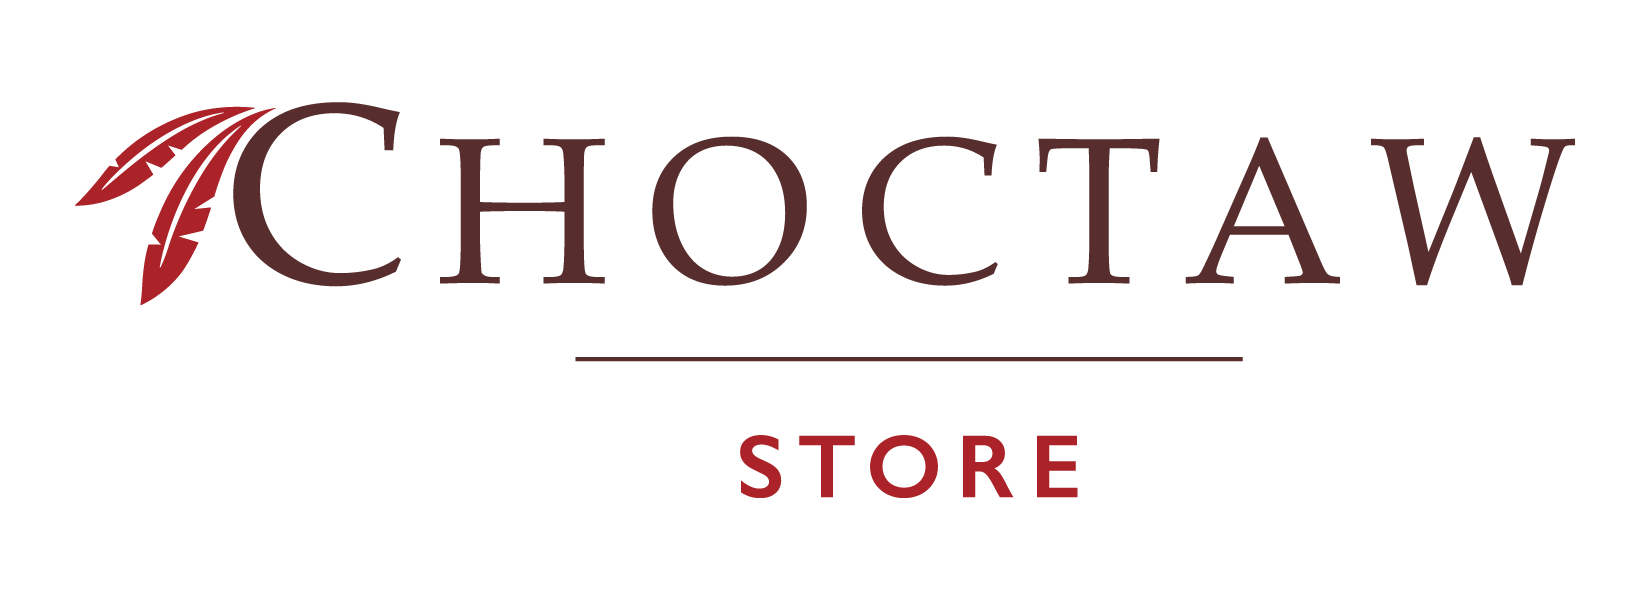 Choctaw Logo - The Choctaw Store Choctaw Store